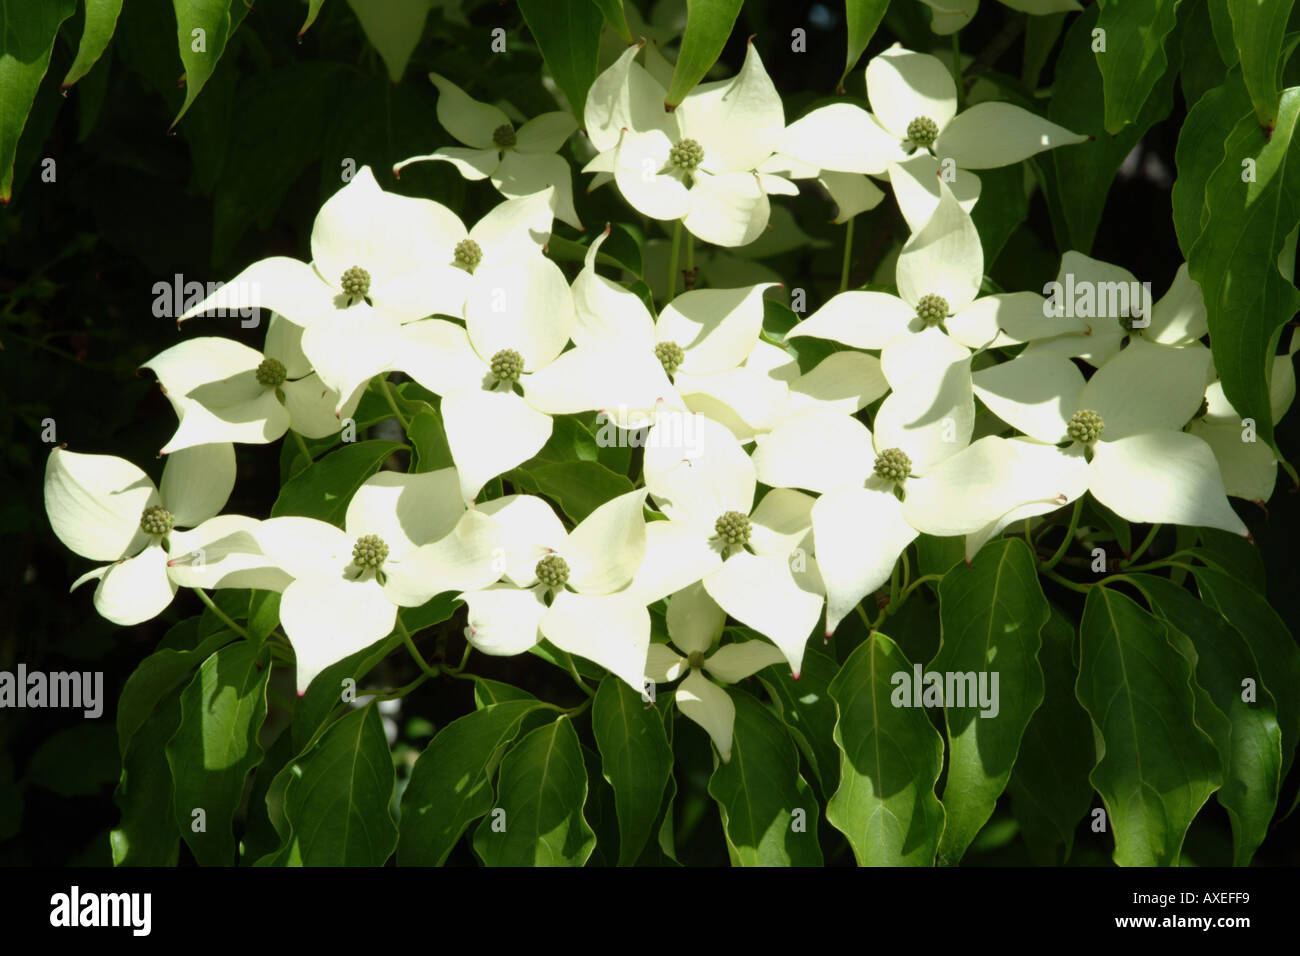 Flower Cluster of the Cornus Nuttallii Dogwood tree Stock Photo